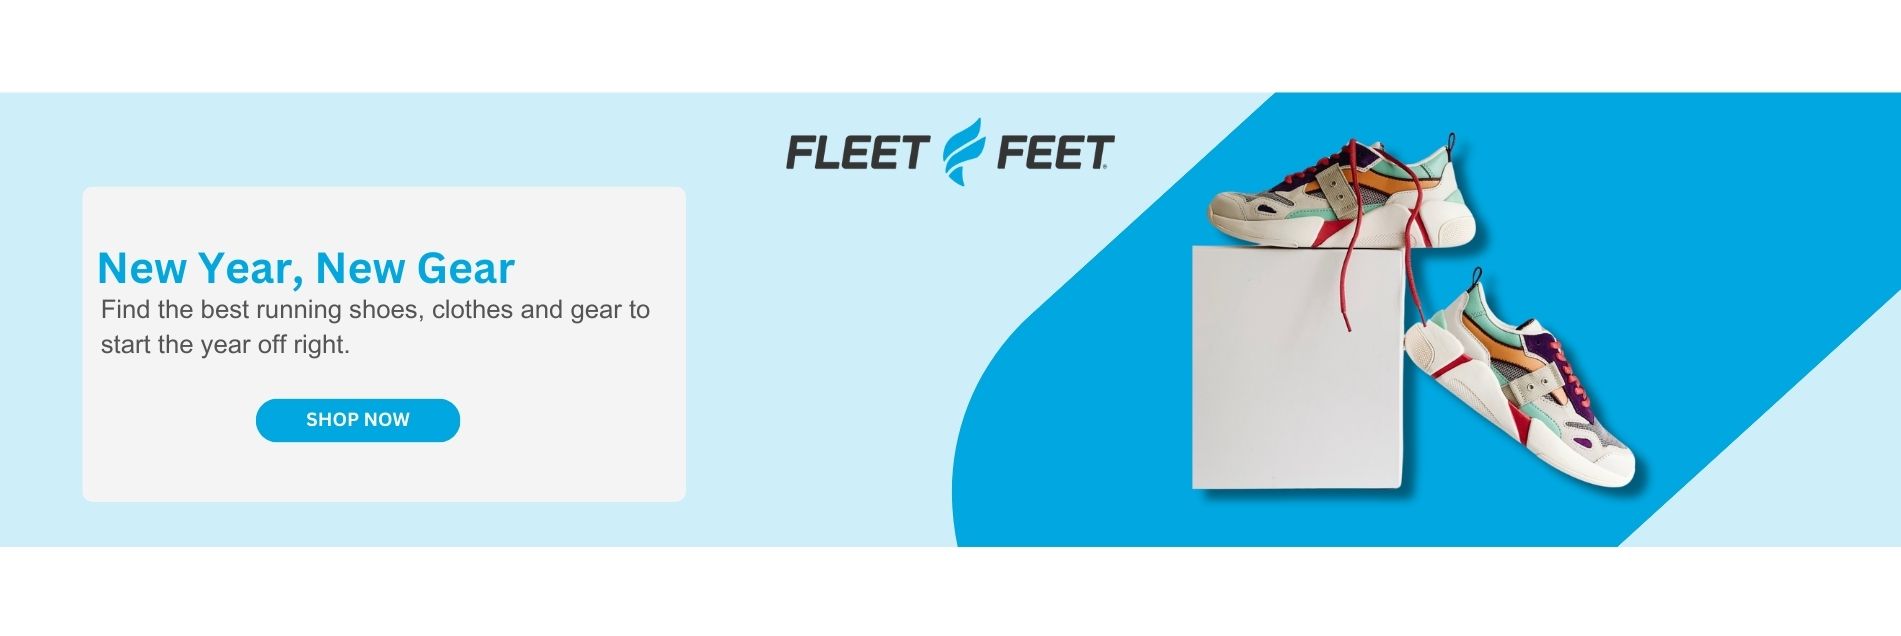 fleet feet